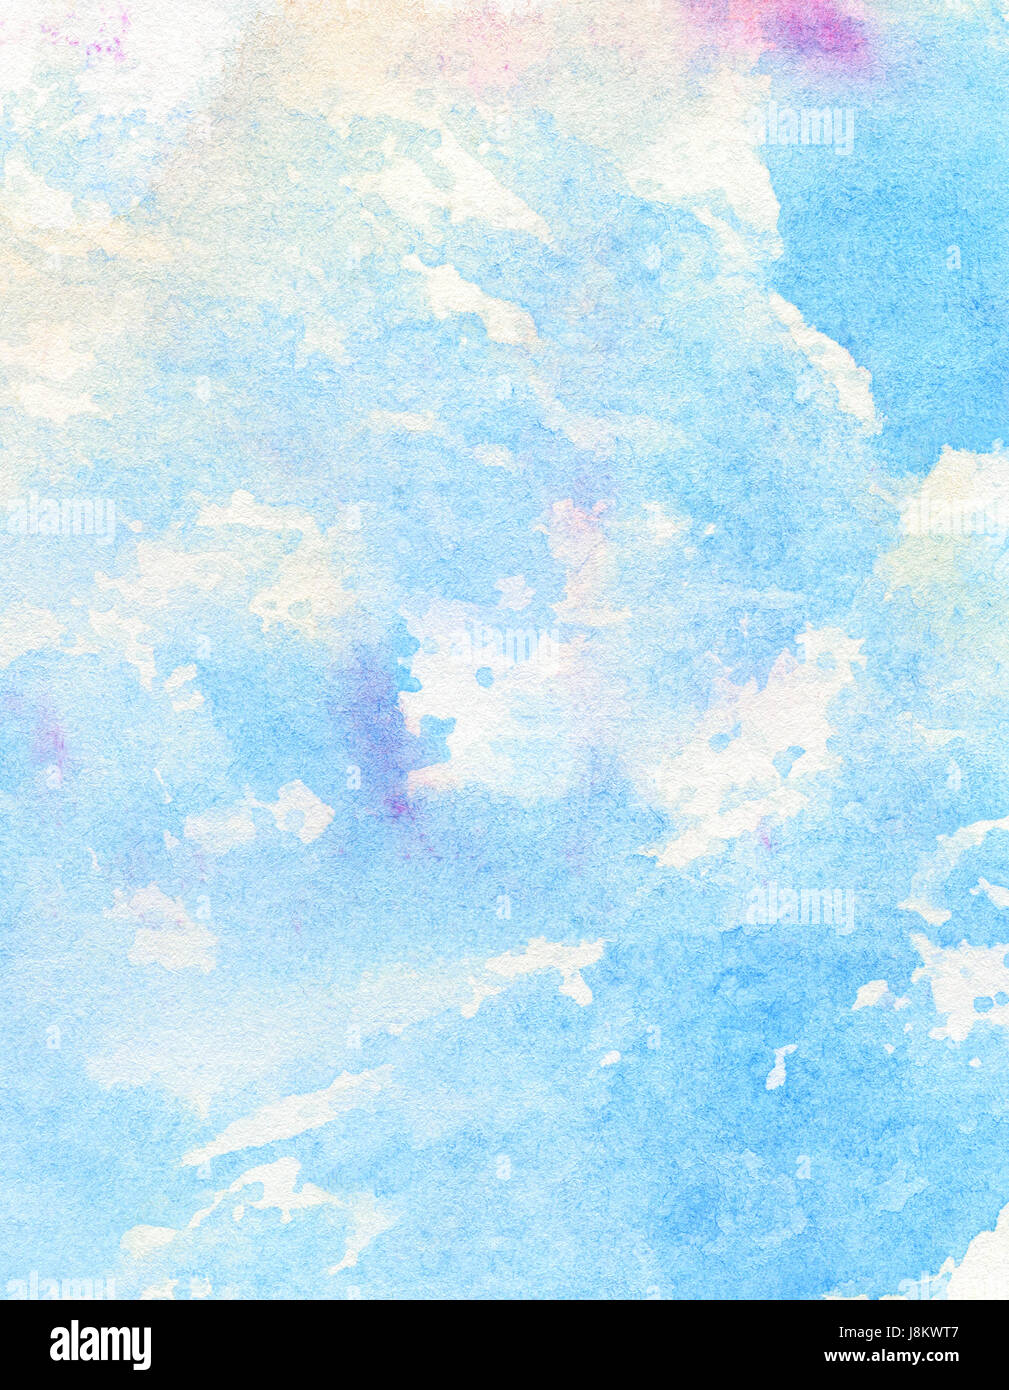 Blau, Licht abstrakt gemalt, Aquarell Himmelshintergrund auslaufen. Stockfoto